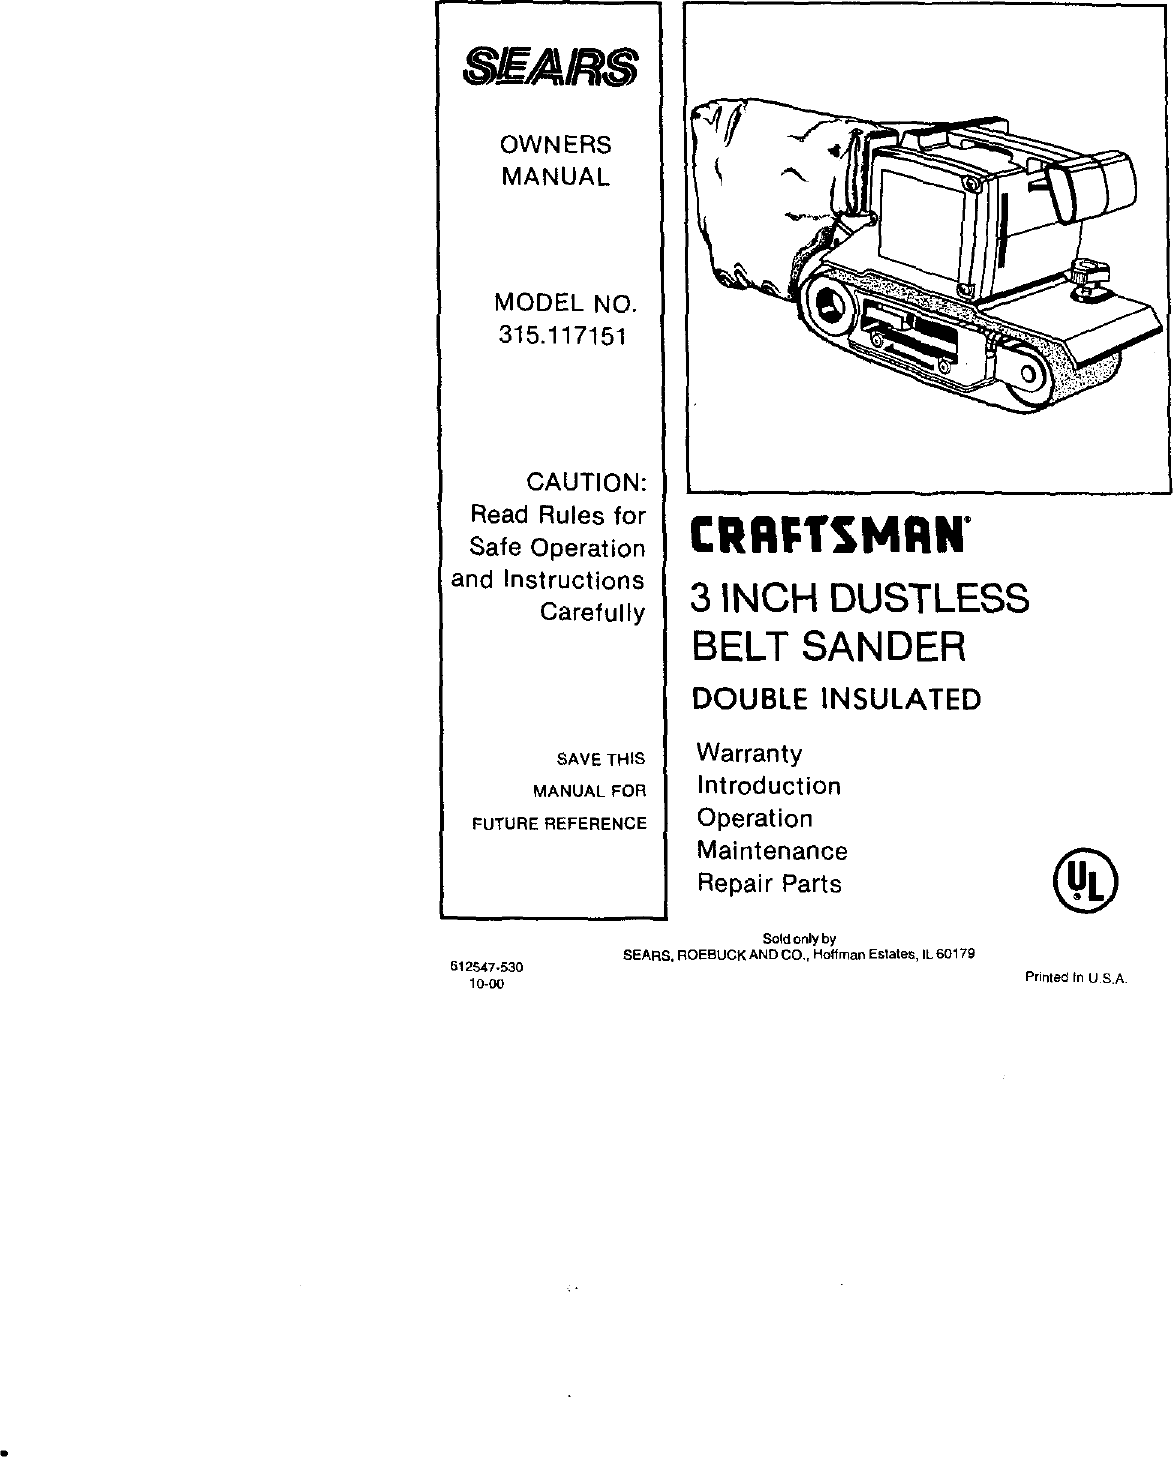 Craftsman 315117151 User Manual 3 INCH DUSTLESS BELT SANDER ...